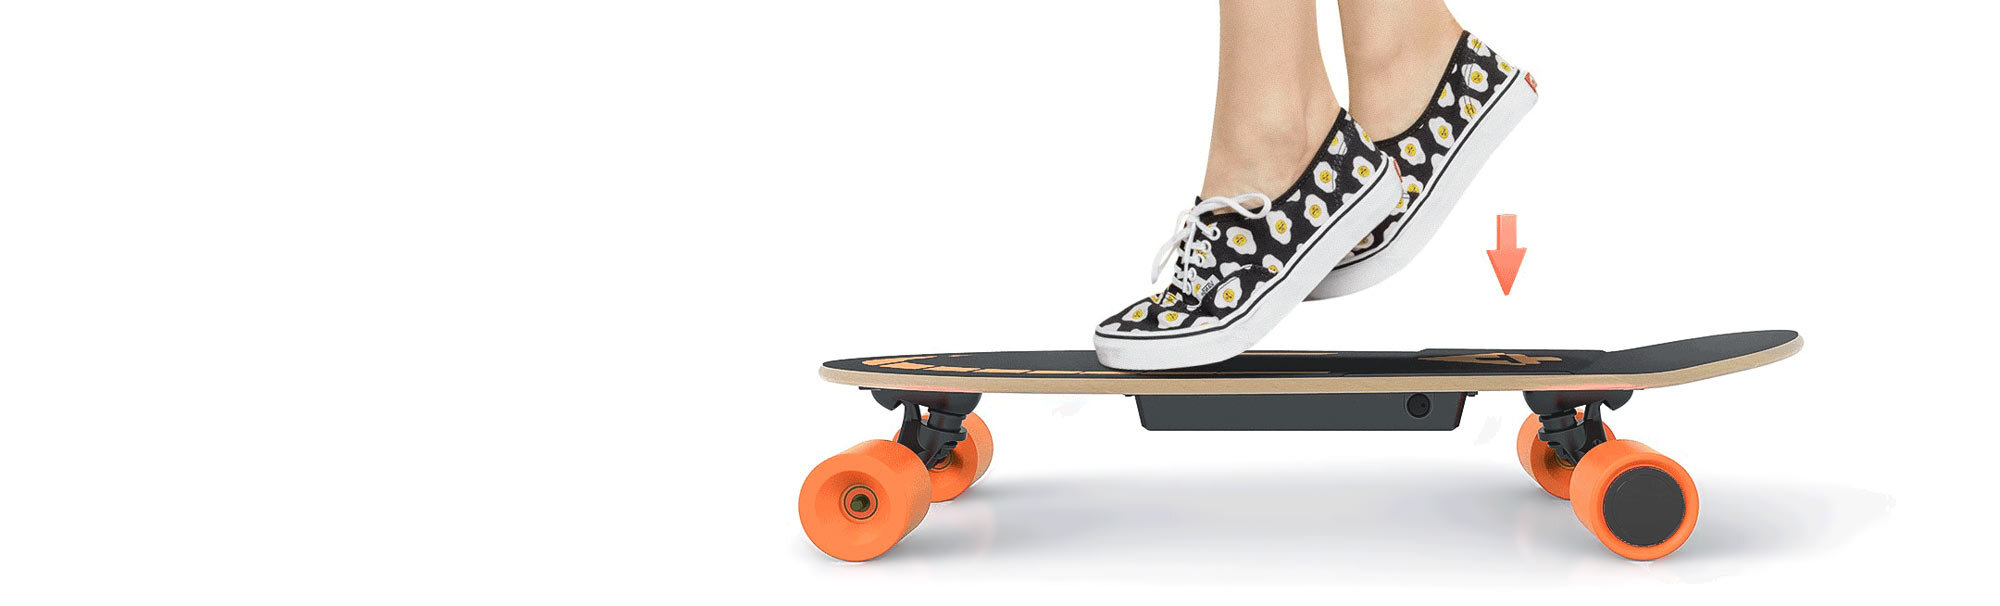 Eek : r/skateboarding